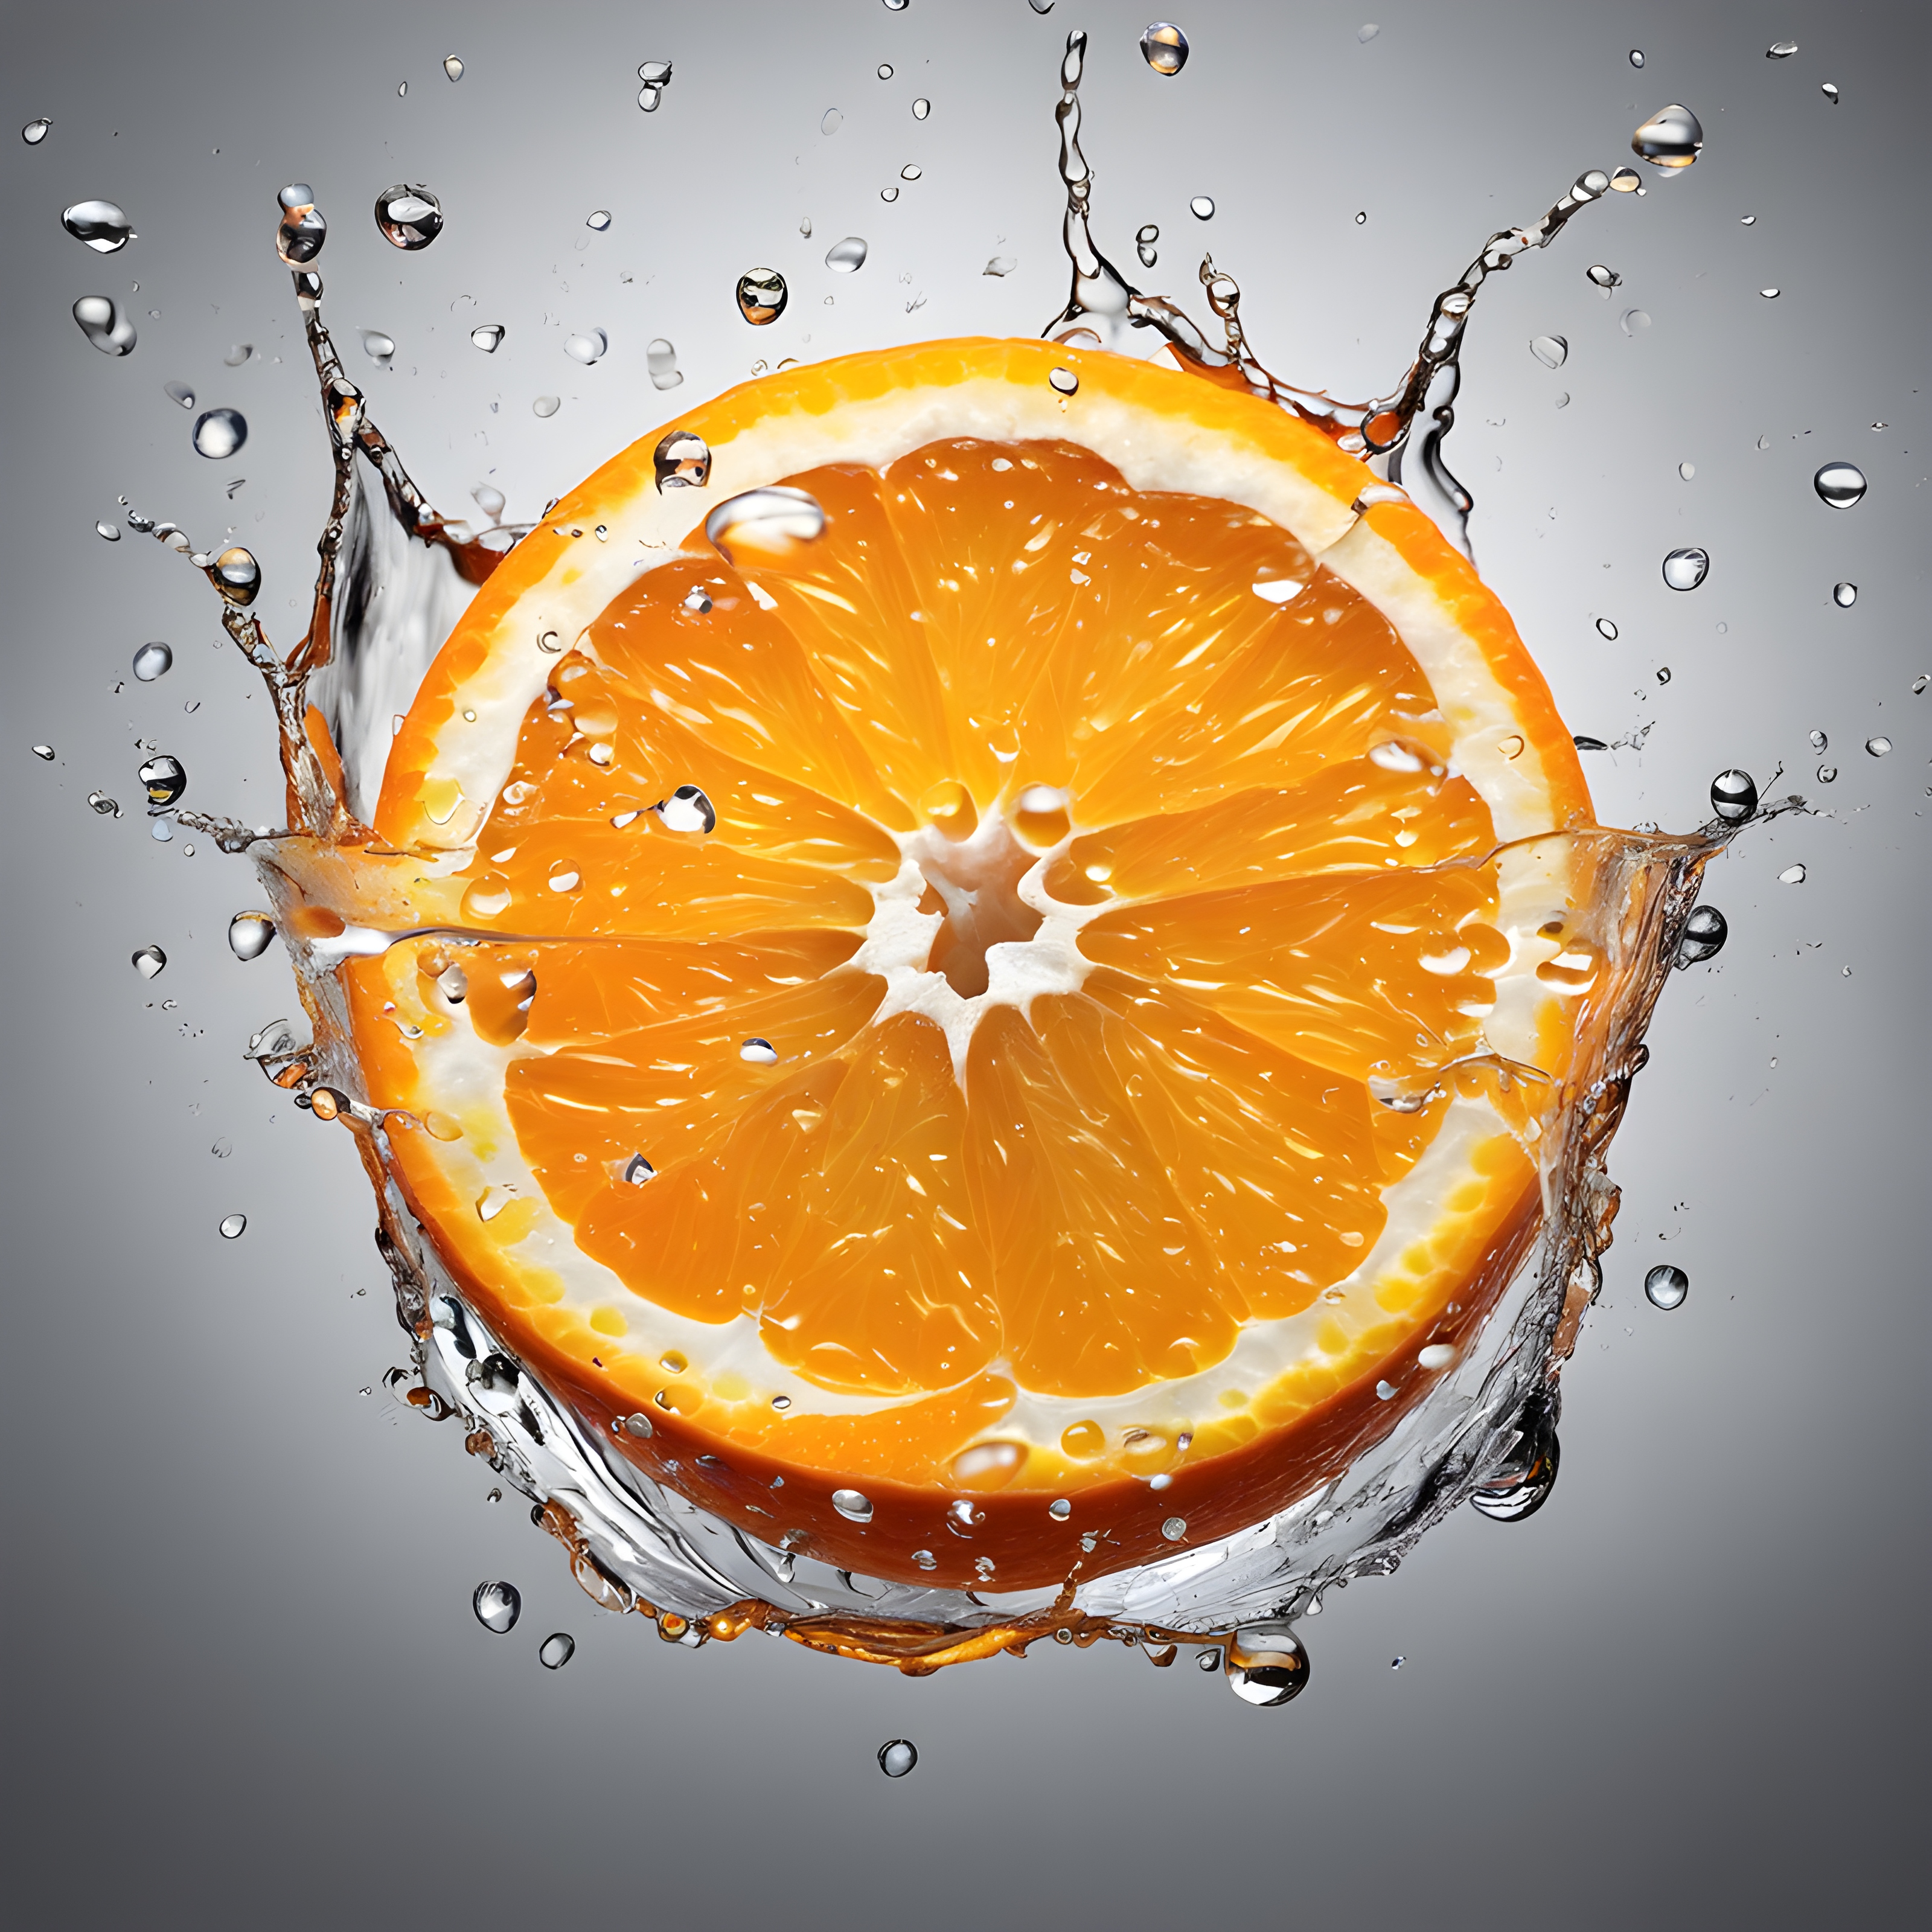 ภาพถ่ายโฆษณาส้มที่สดและอร่อยมีน้ำกระเด็นจากบนลงล่าง พื้นหลังเป็นสีเทาอ่อน